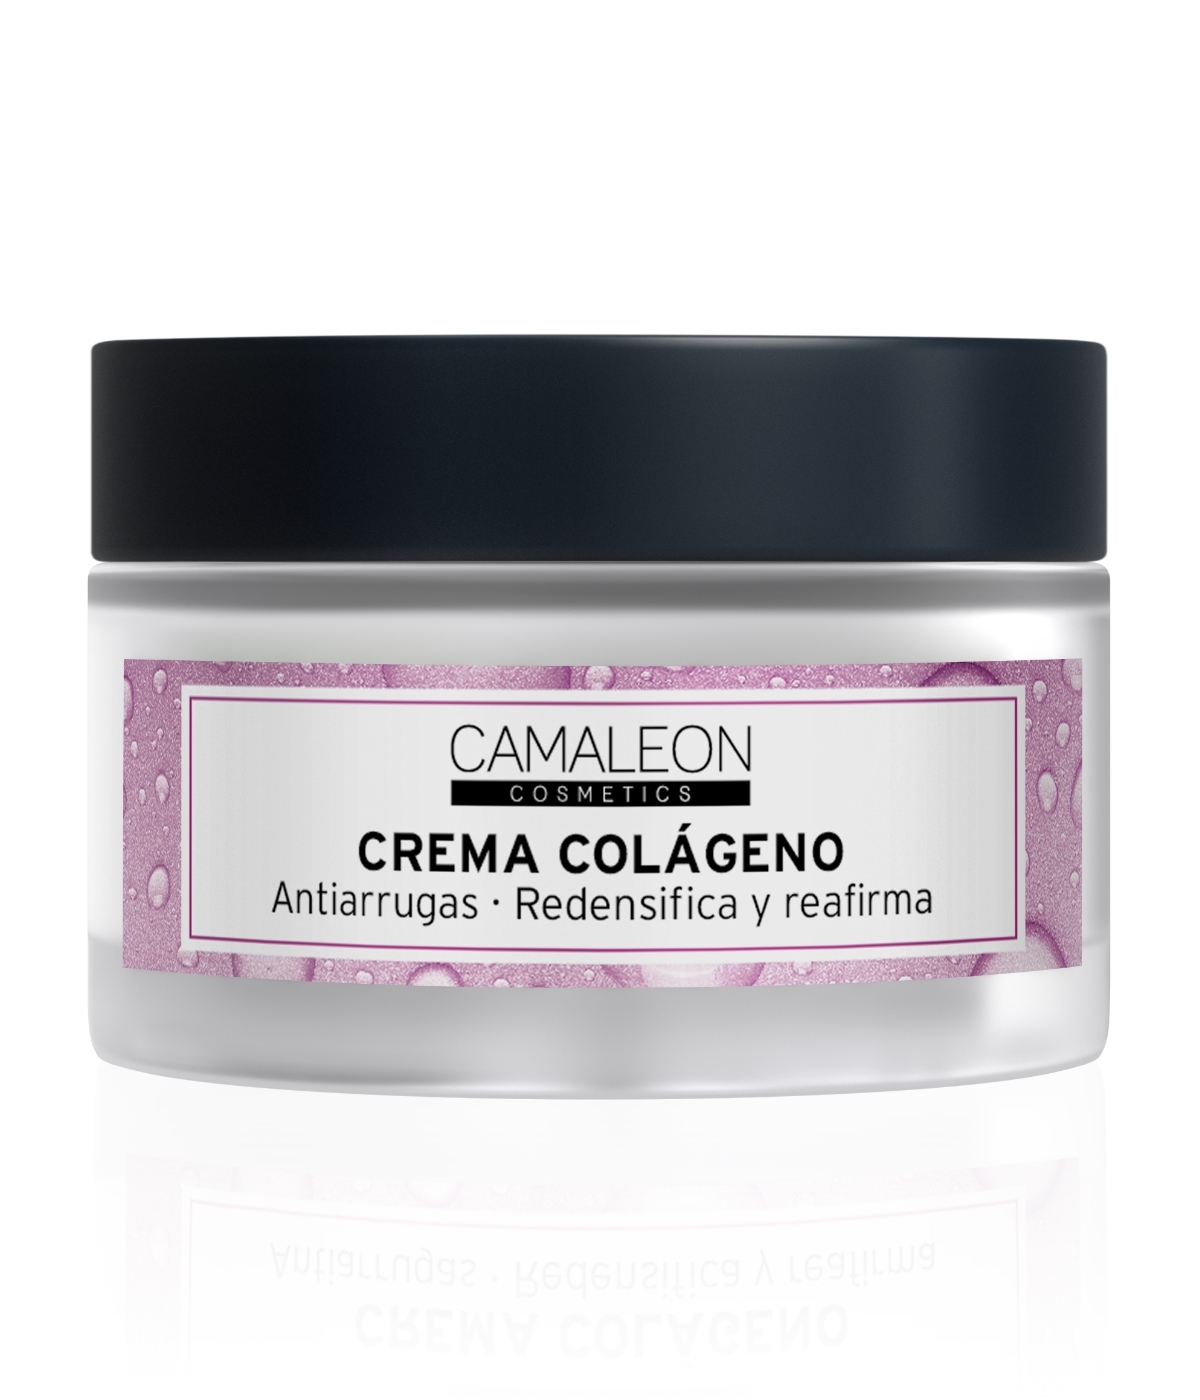 Crema colágeno de Camaleon Cosmetics.